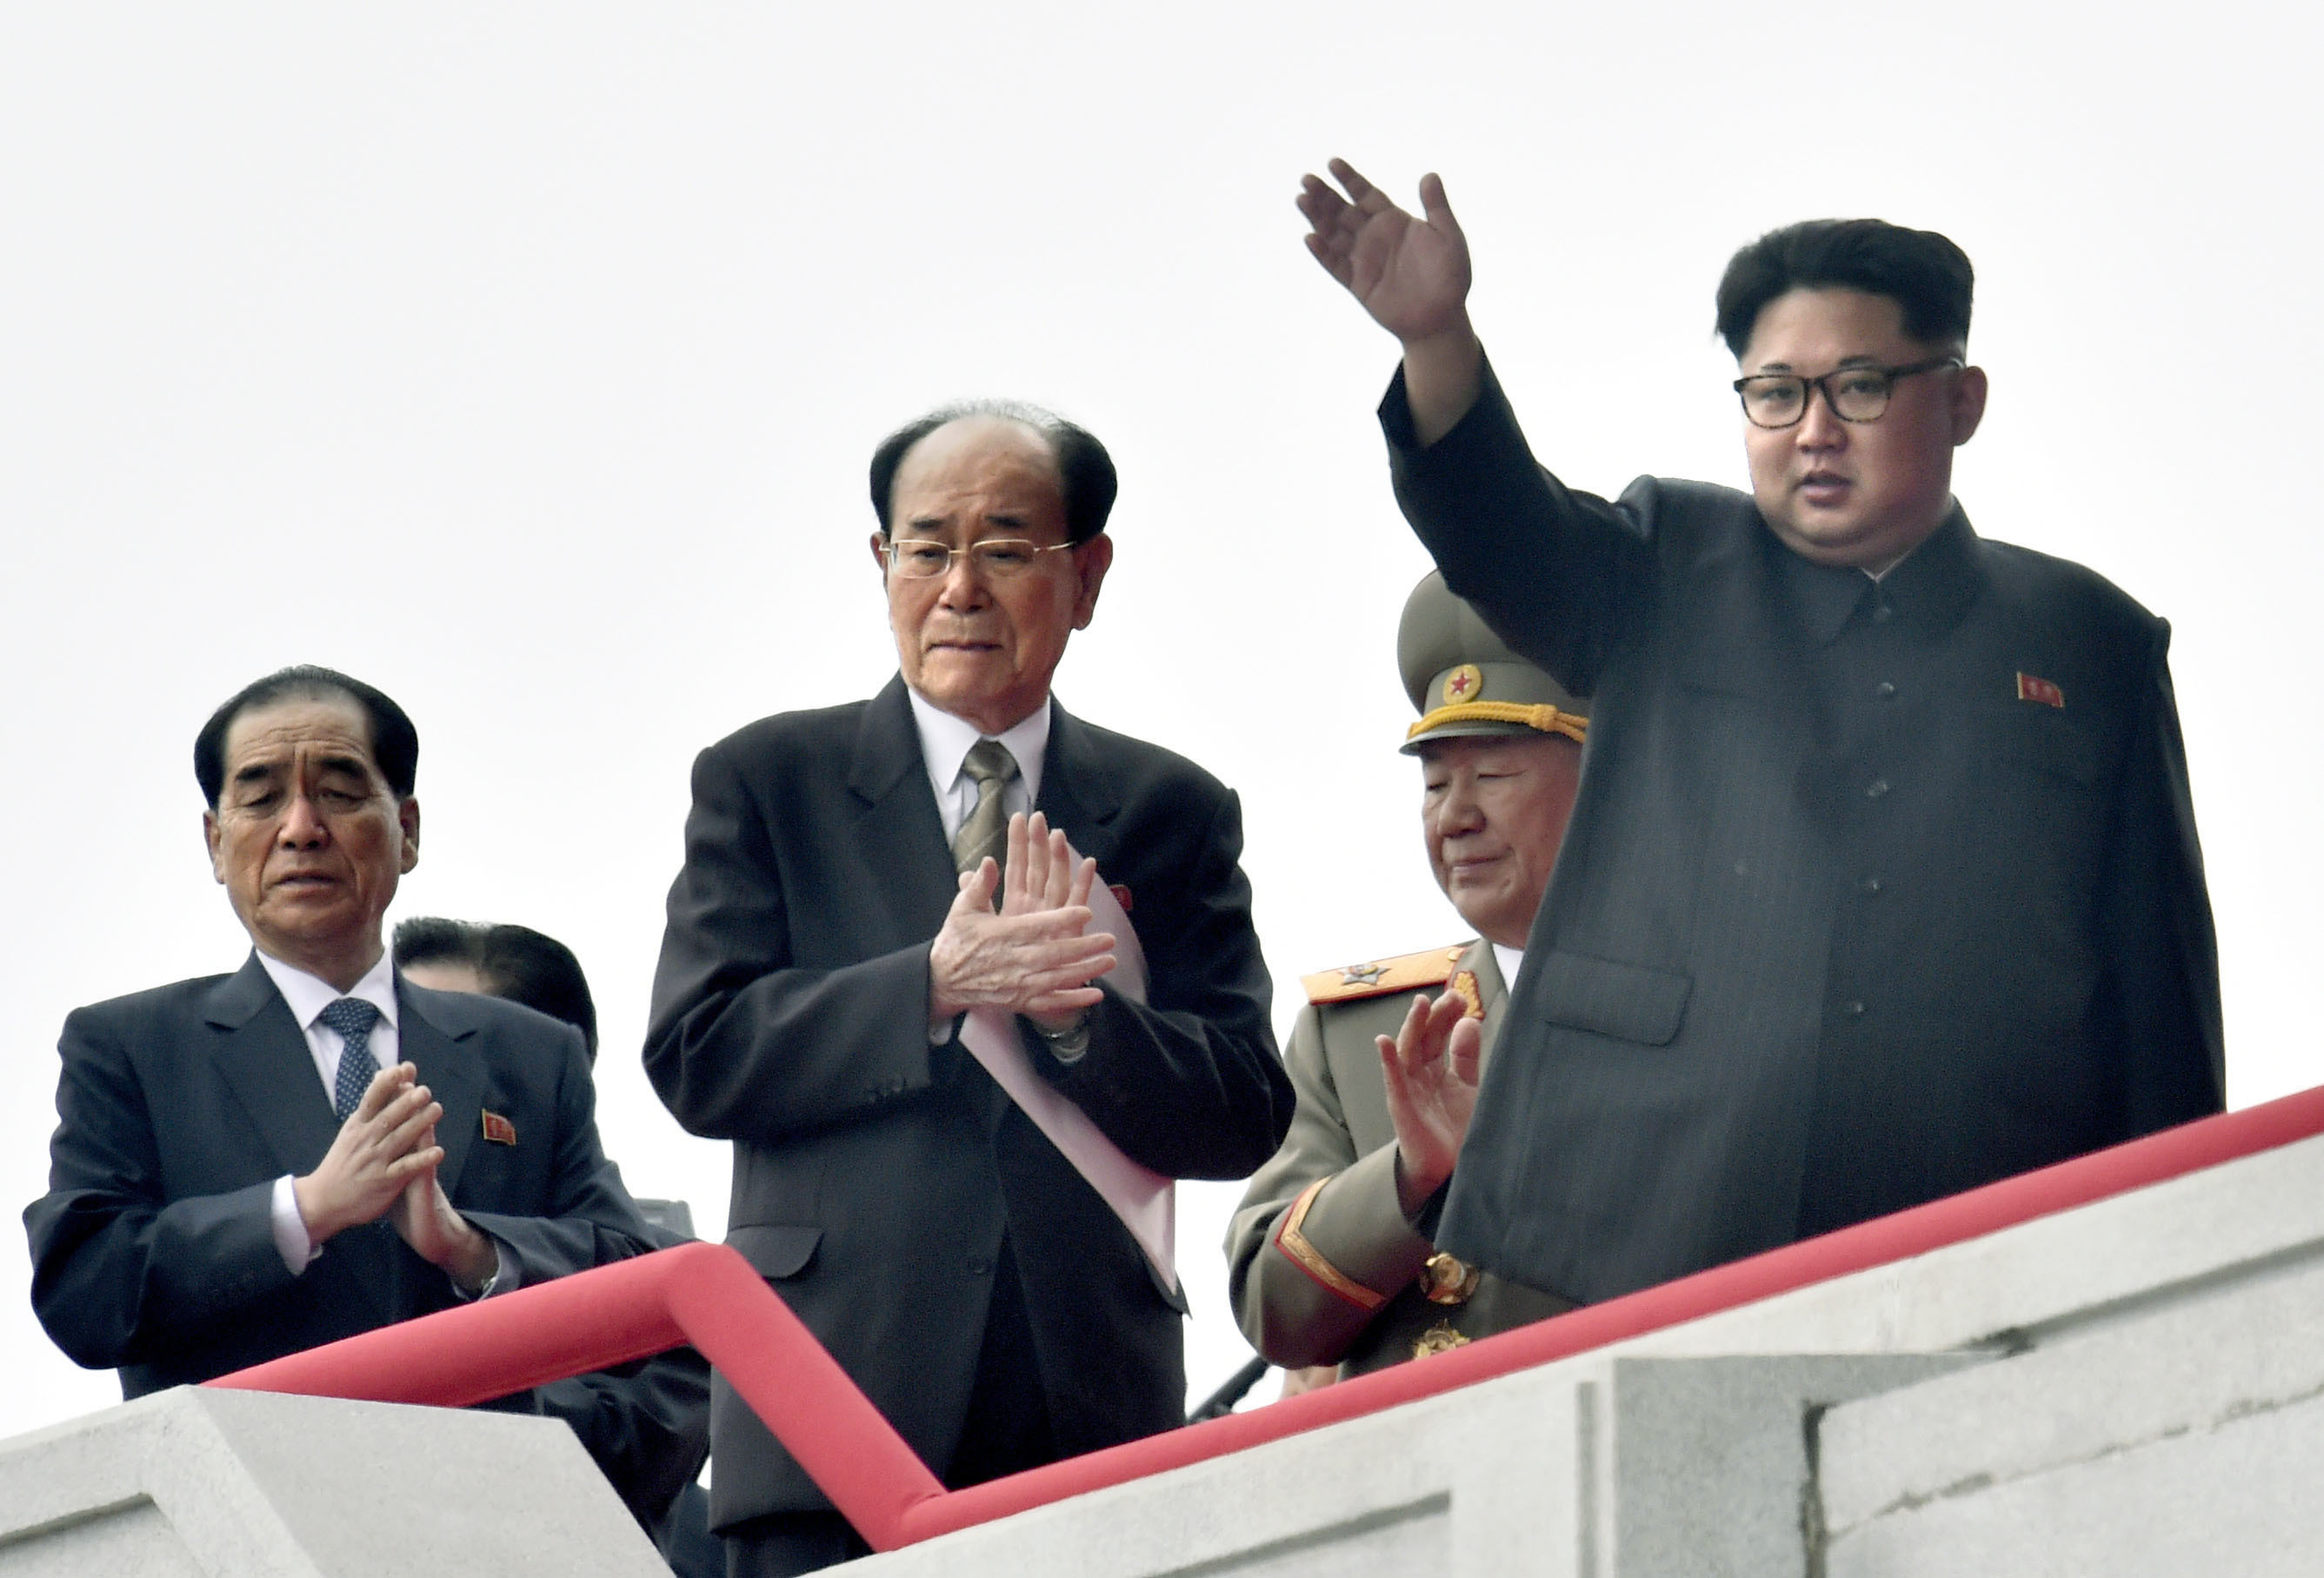 Oficial rus: Situaţia din Peninsula Coreeană ar putea escalada în anul 2020